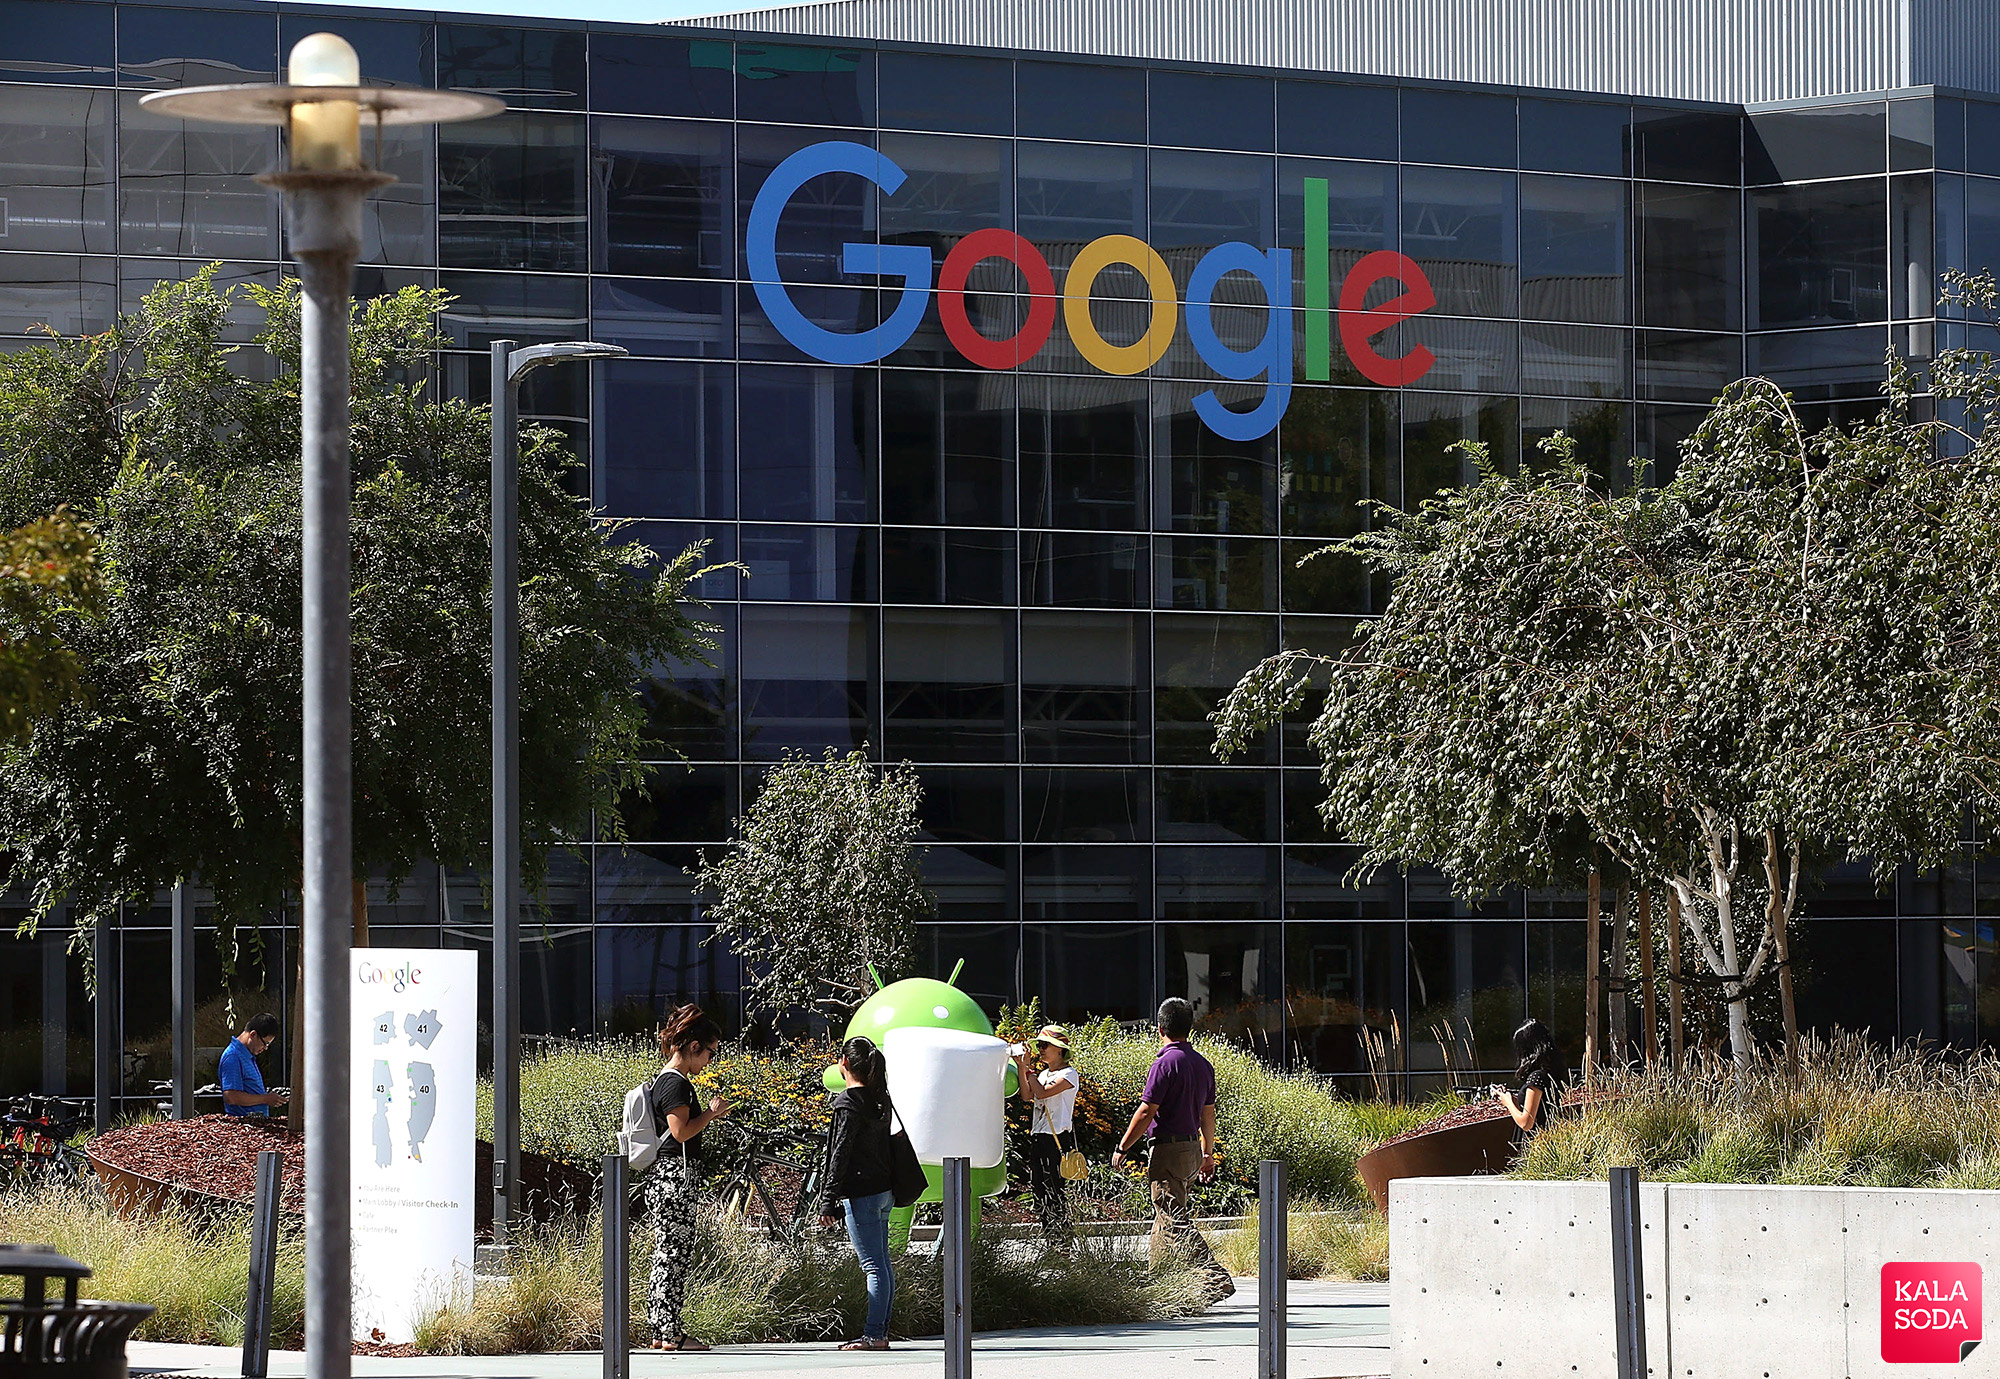 کارمندان موافق و مخالف تبعیض جنسیتی در گوگل به جان هم افتادند|کالاسودا